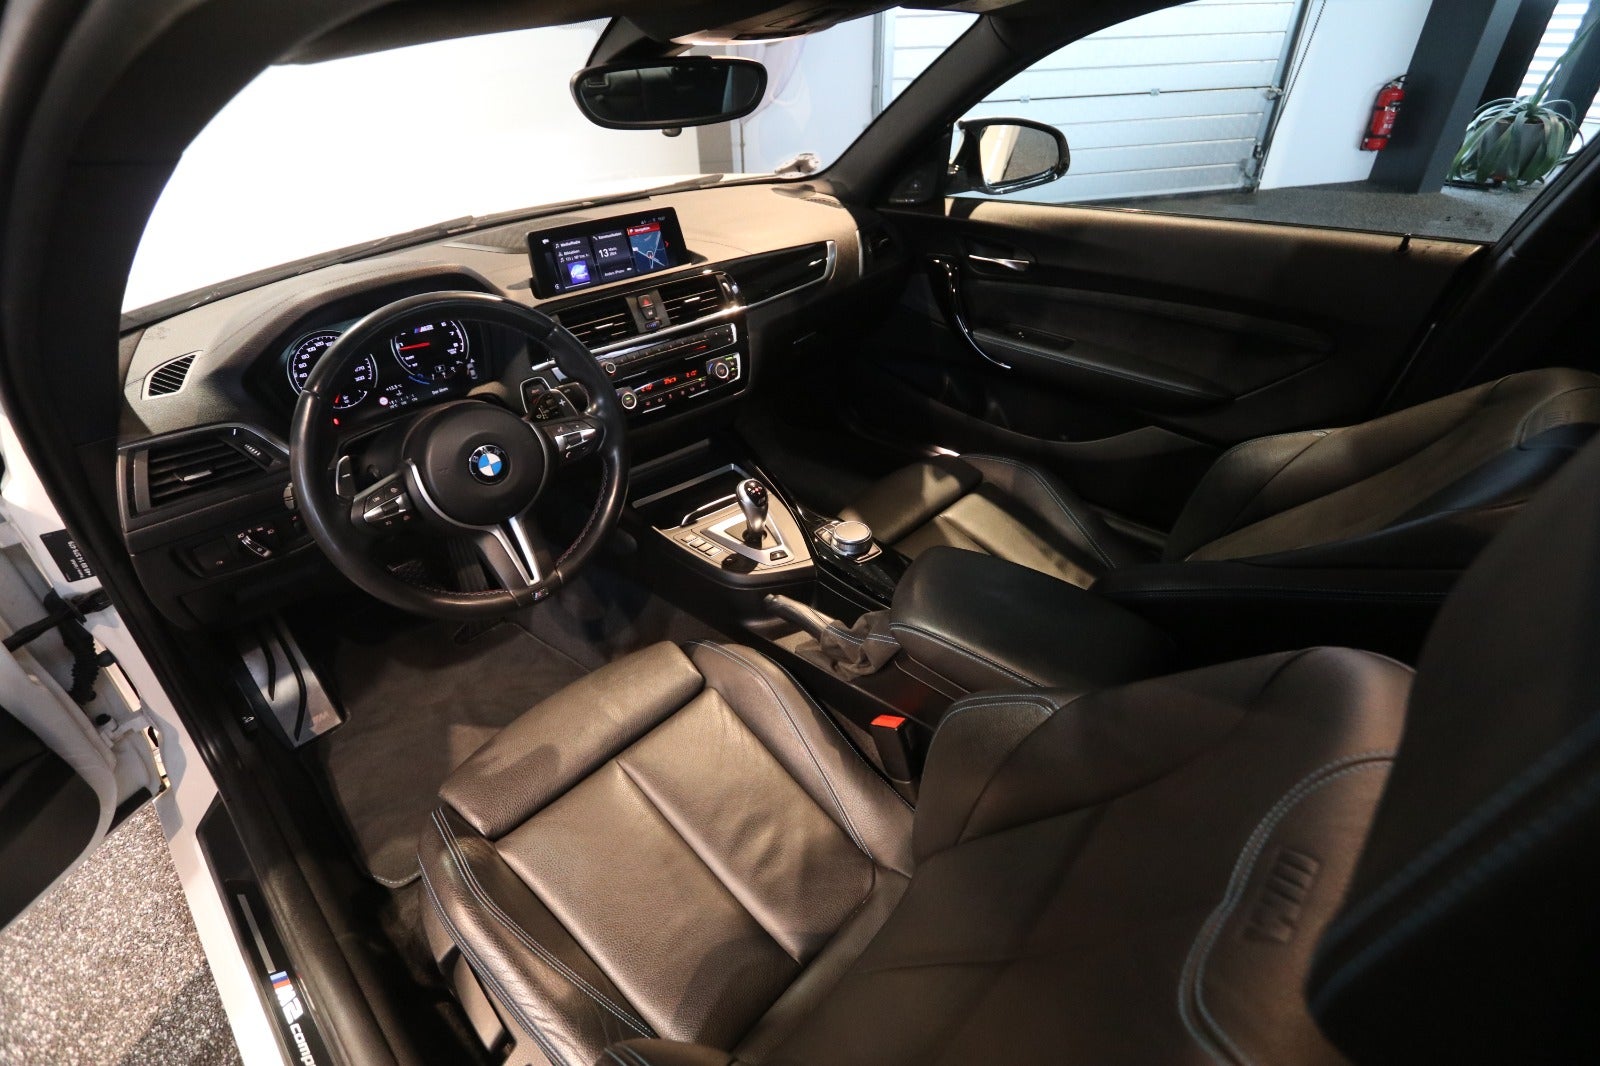 BMW M2 2019